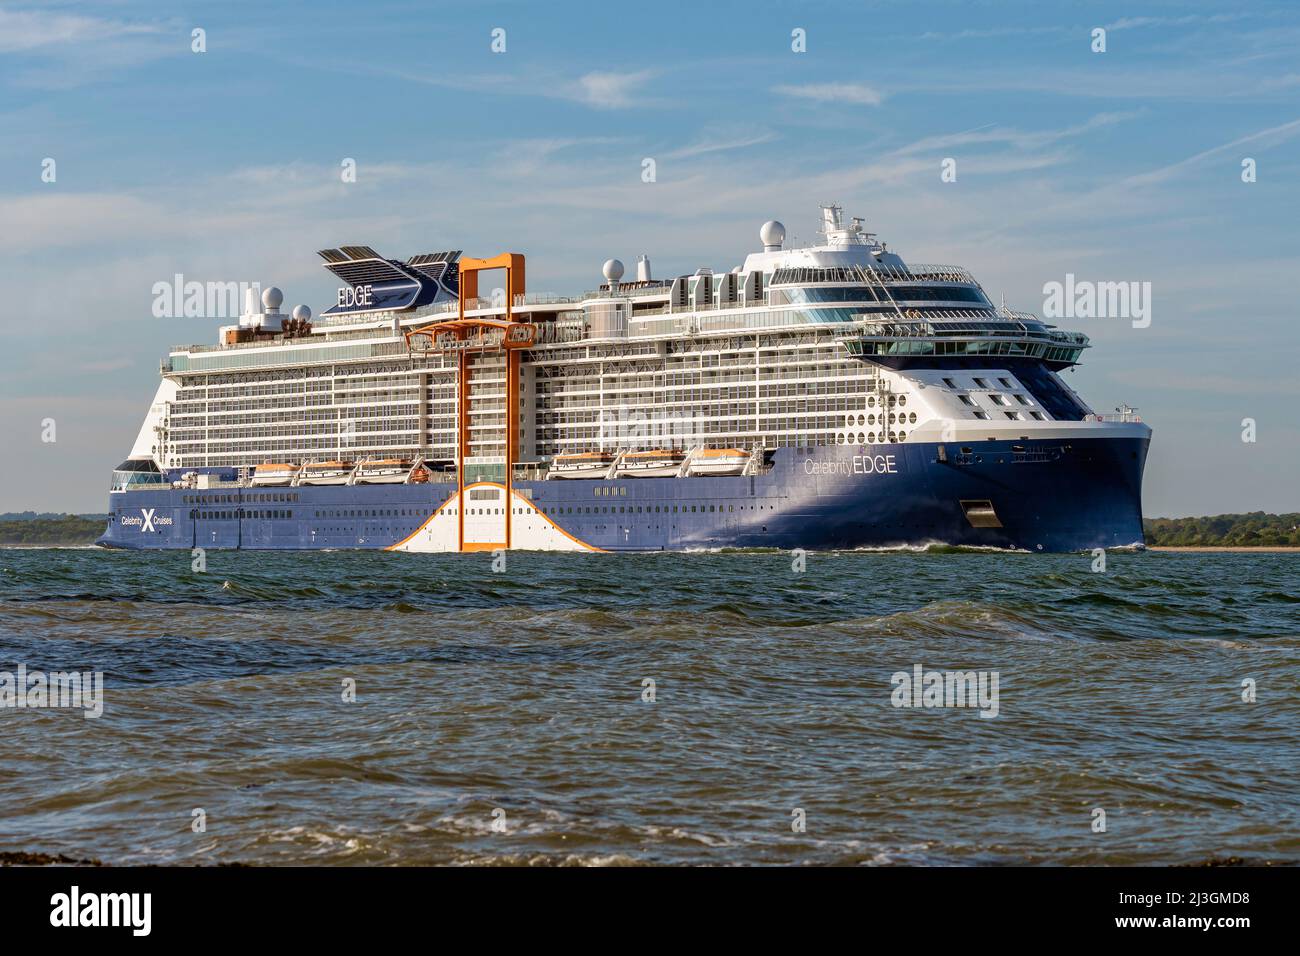 Celebrity Edge est un bateau de croisière de classe Edge exploité par Celebrity Cruises - mai 2019. Banque D'Images